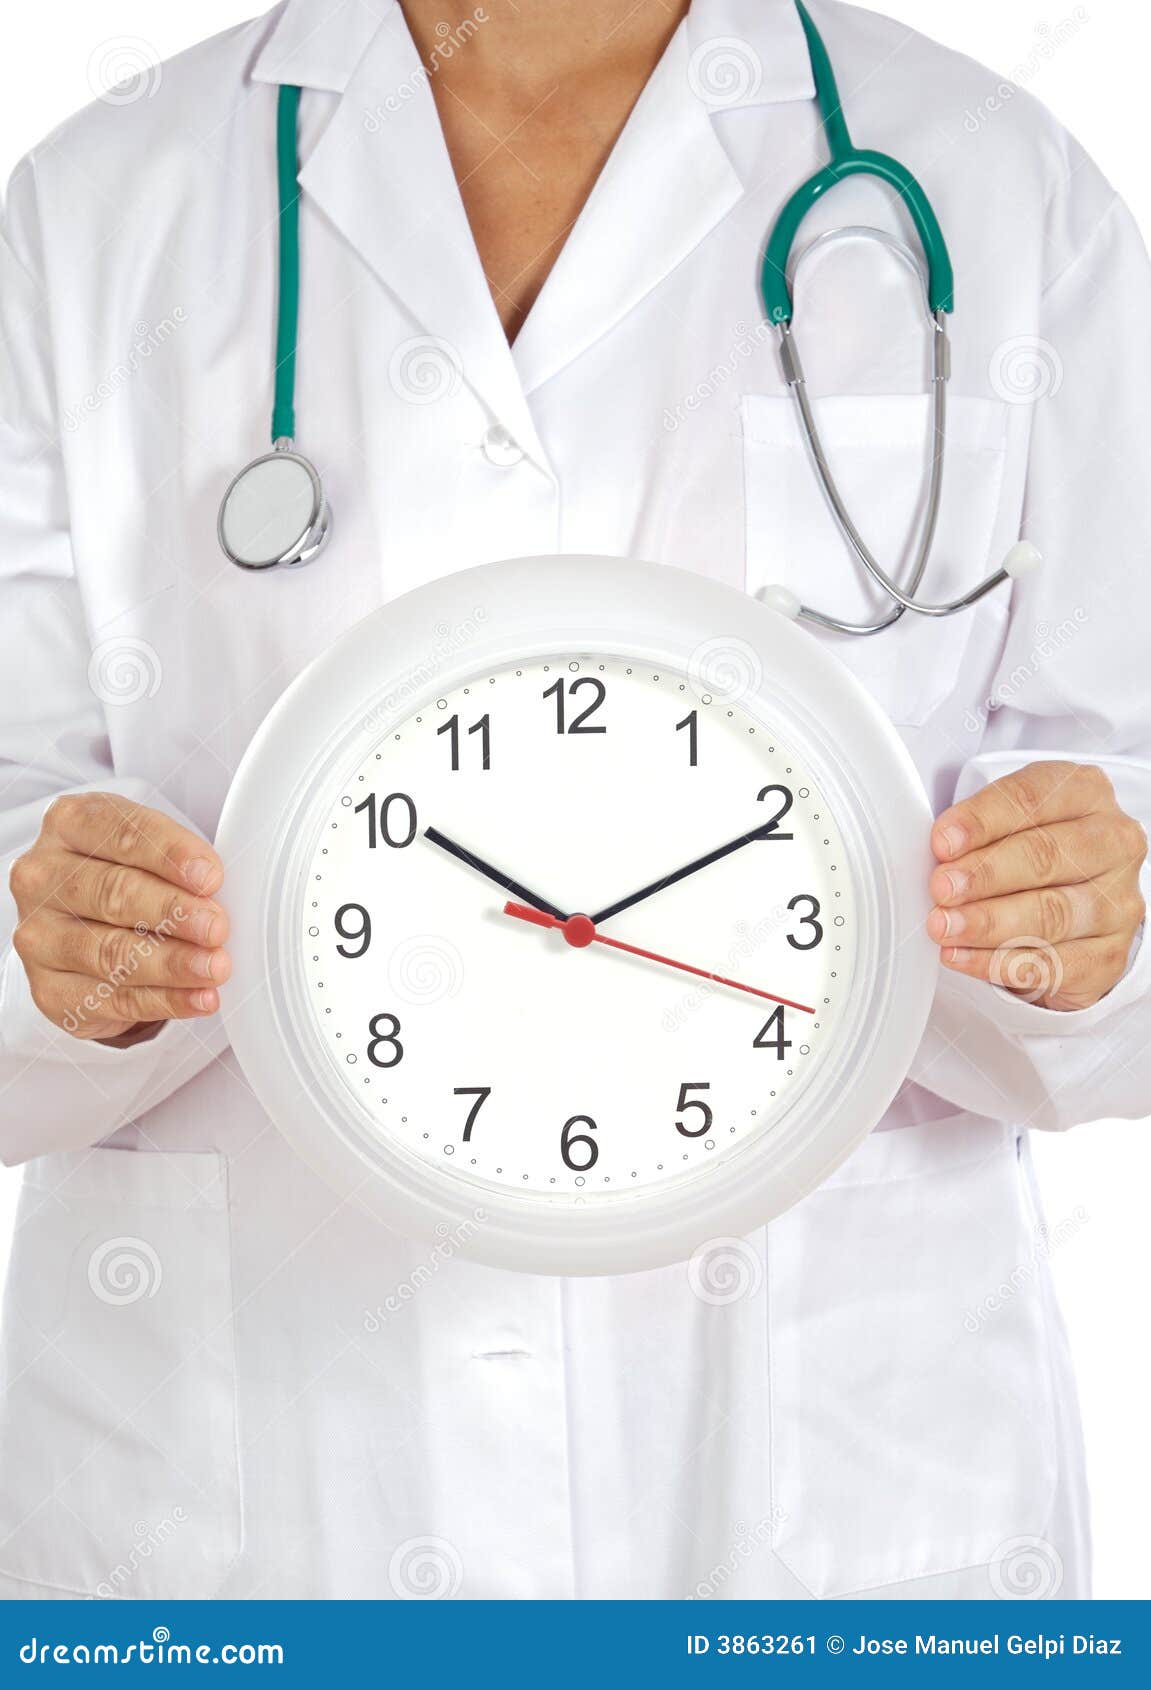 Доктор час doctor clock. Часы для врача. Врач с часами. Врач и время. Медицина с часами картинка.